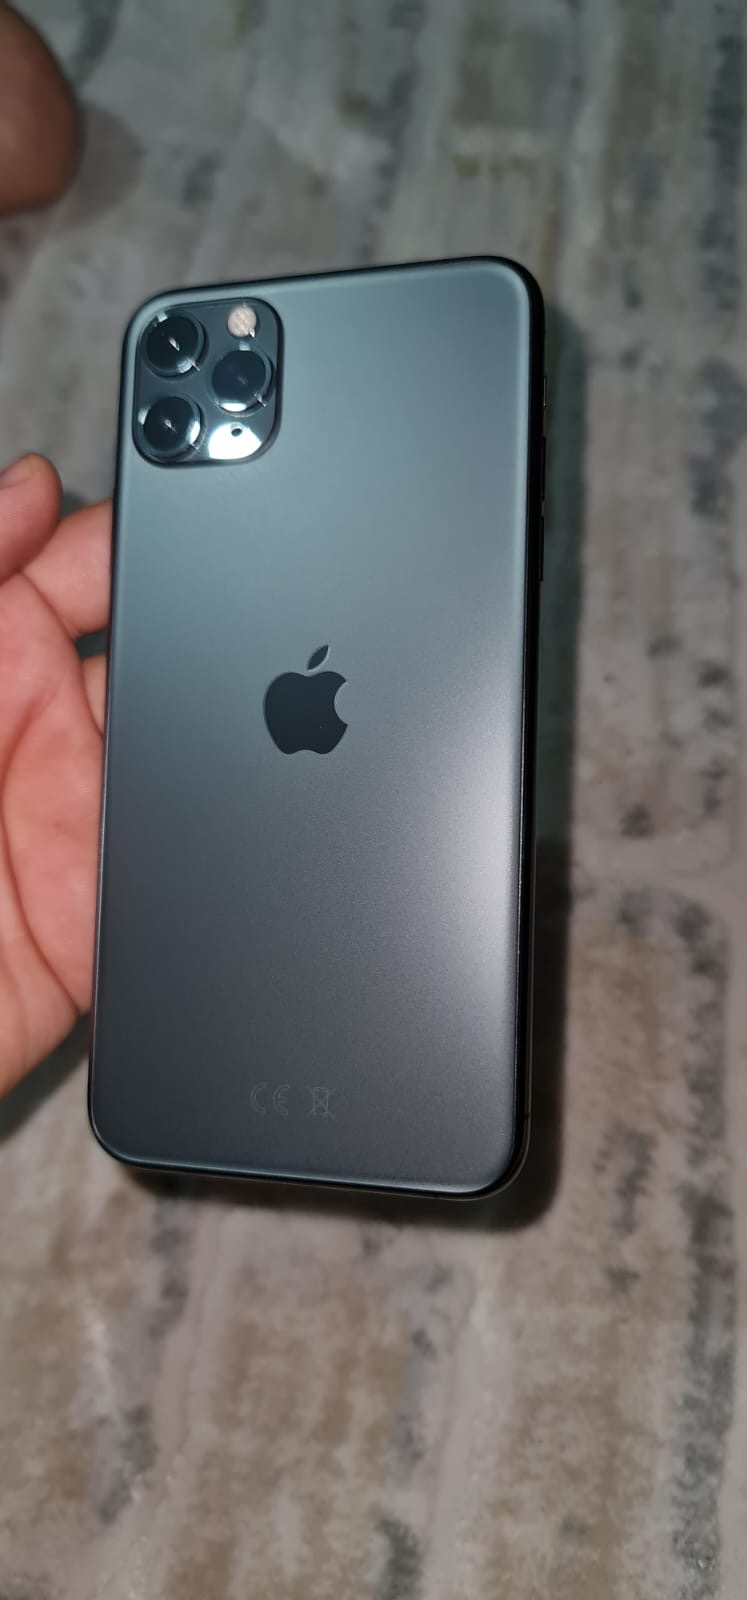 DIP FİYAT (İlk Sahibinden Satılık) iPhone 11 pro max 64 gb TR cihazı  Açılmamış | DonanımHaber Forum